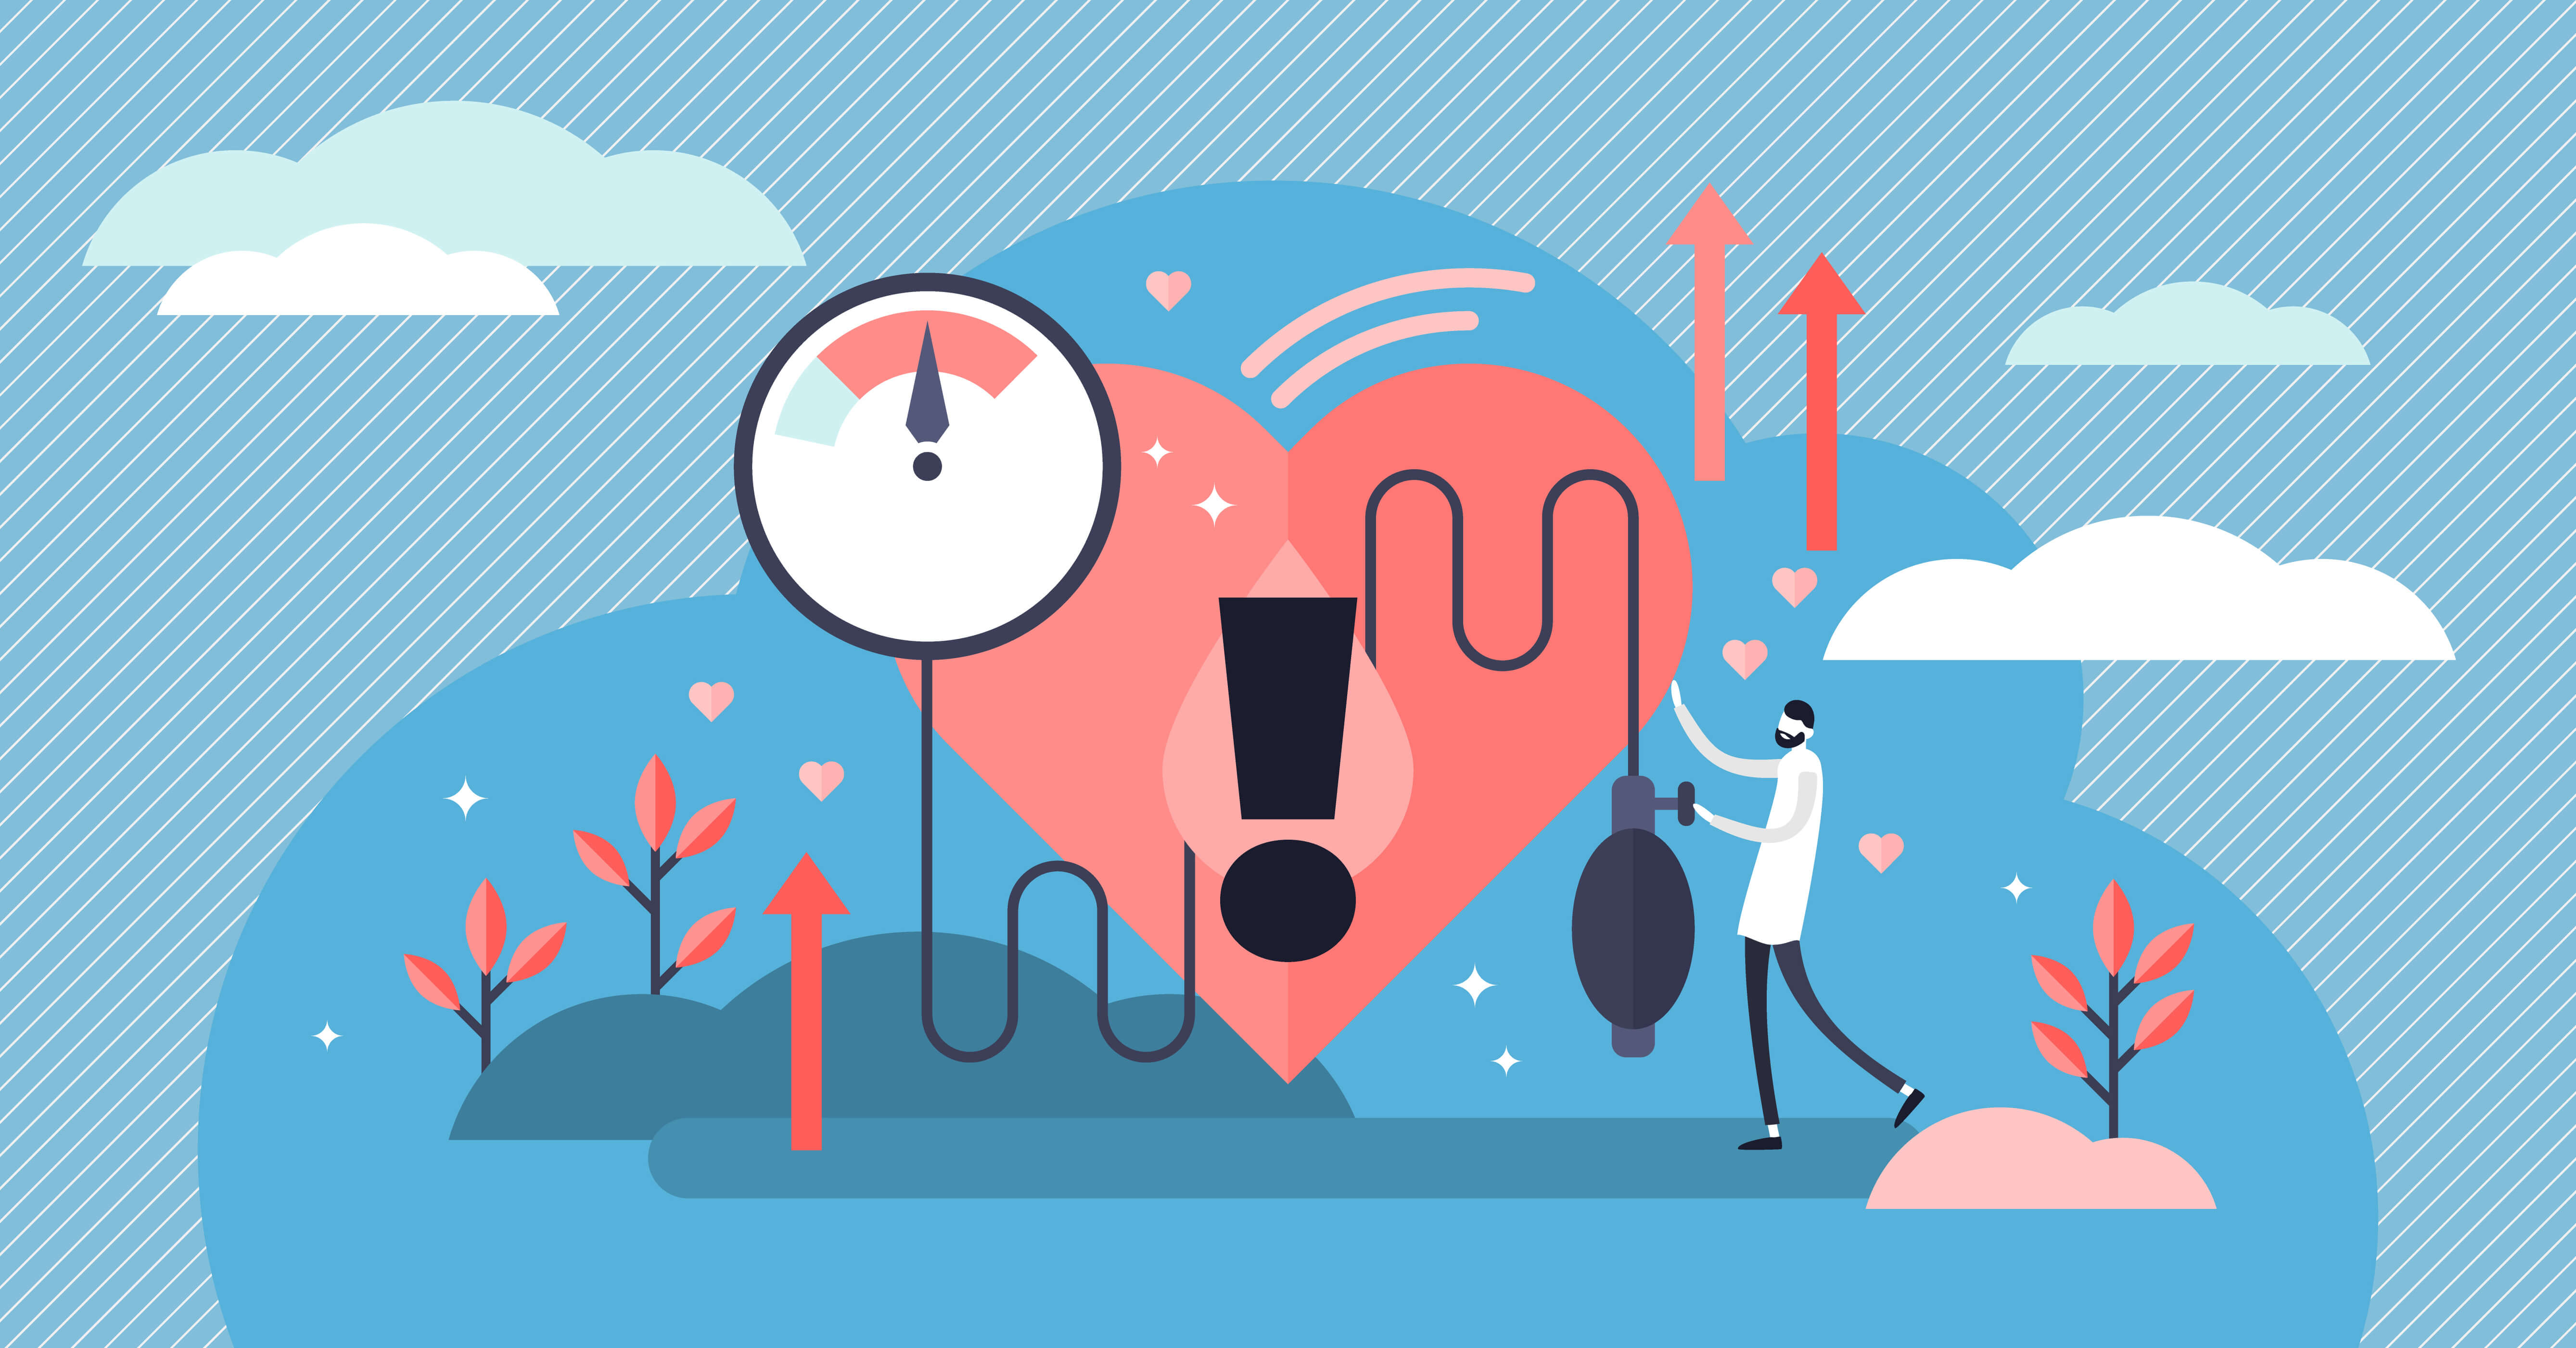 Zu sehen ist eine Illustration von einem Herz an welchem ein Arzt den Blutdruck misst, welcher zu Hoch ist.